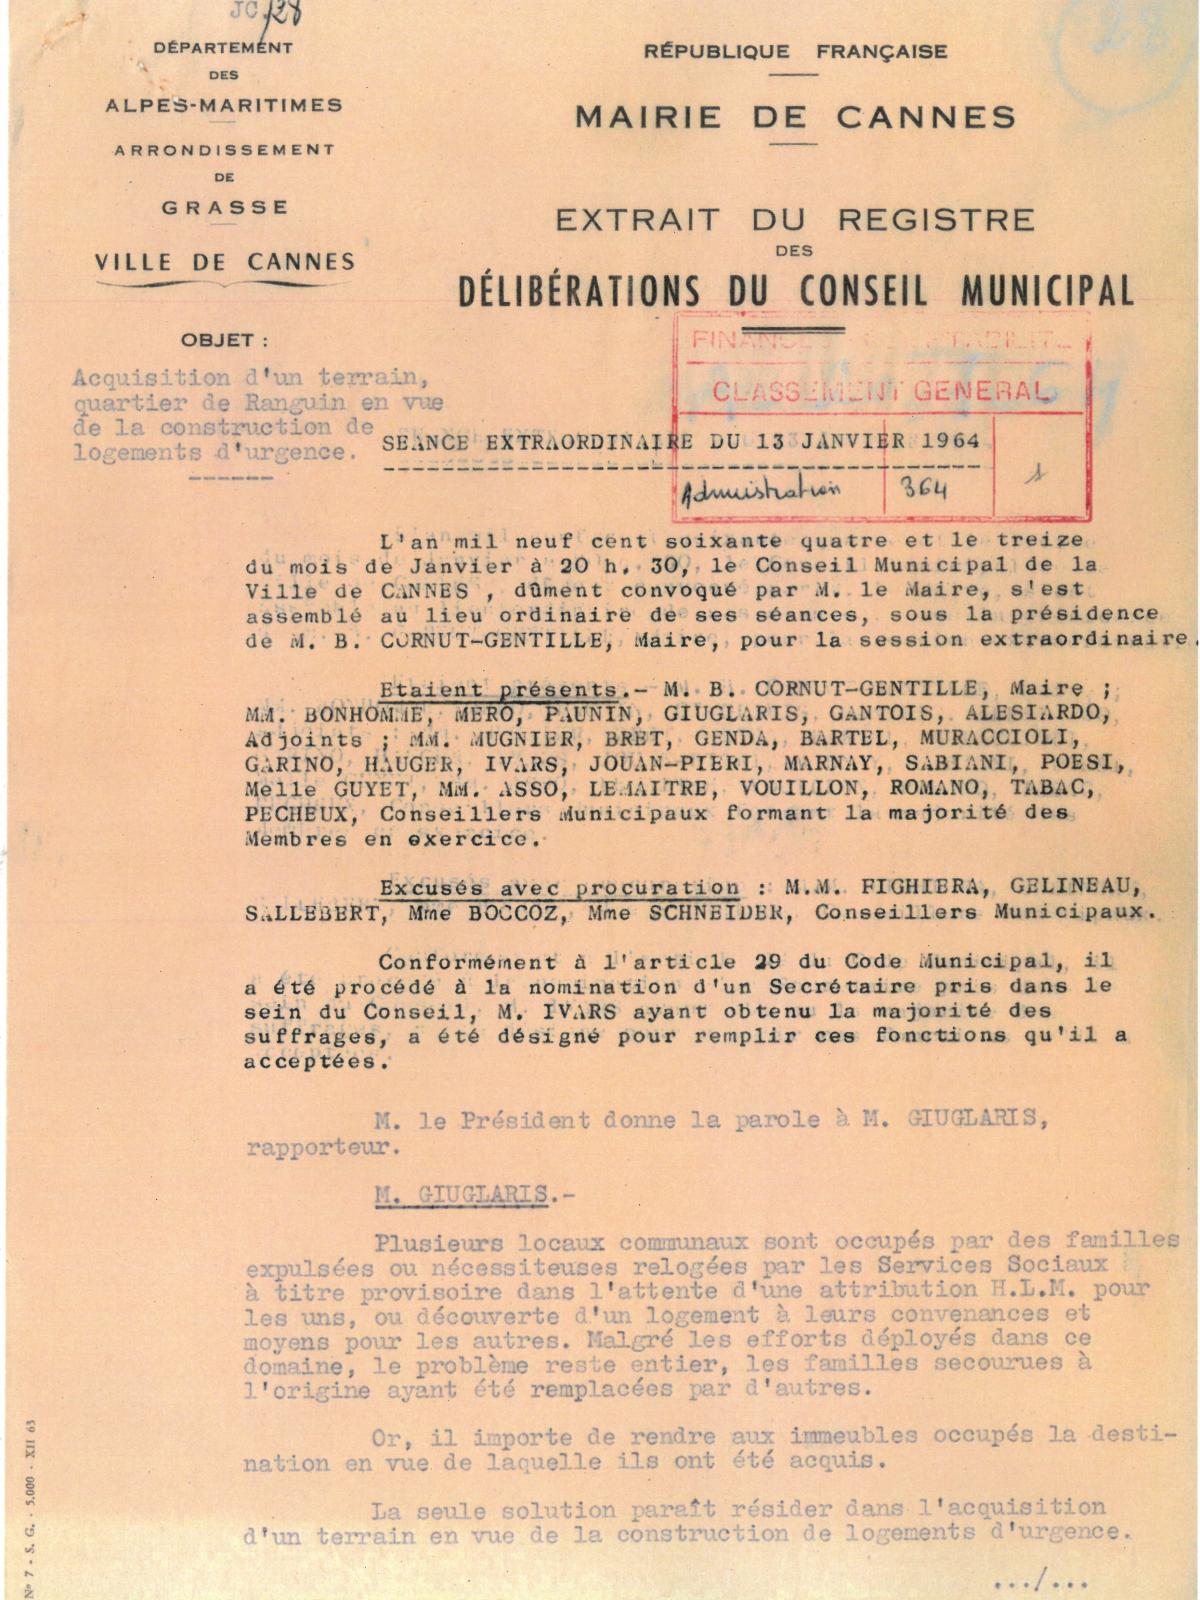 Illustration 1, p. 1 : délibérations du conseil municipal, séance extraordinaire du 13 janvier 1964, acquisition d’un terrain, quartier de Ranguin, en vue de la construction de logements d’urgence (Archives de Cannes, 22W238)